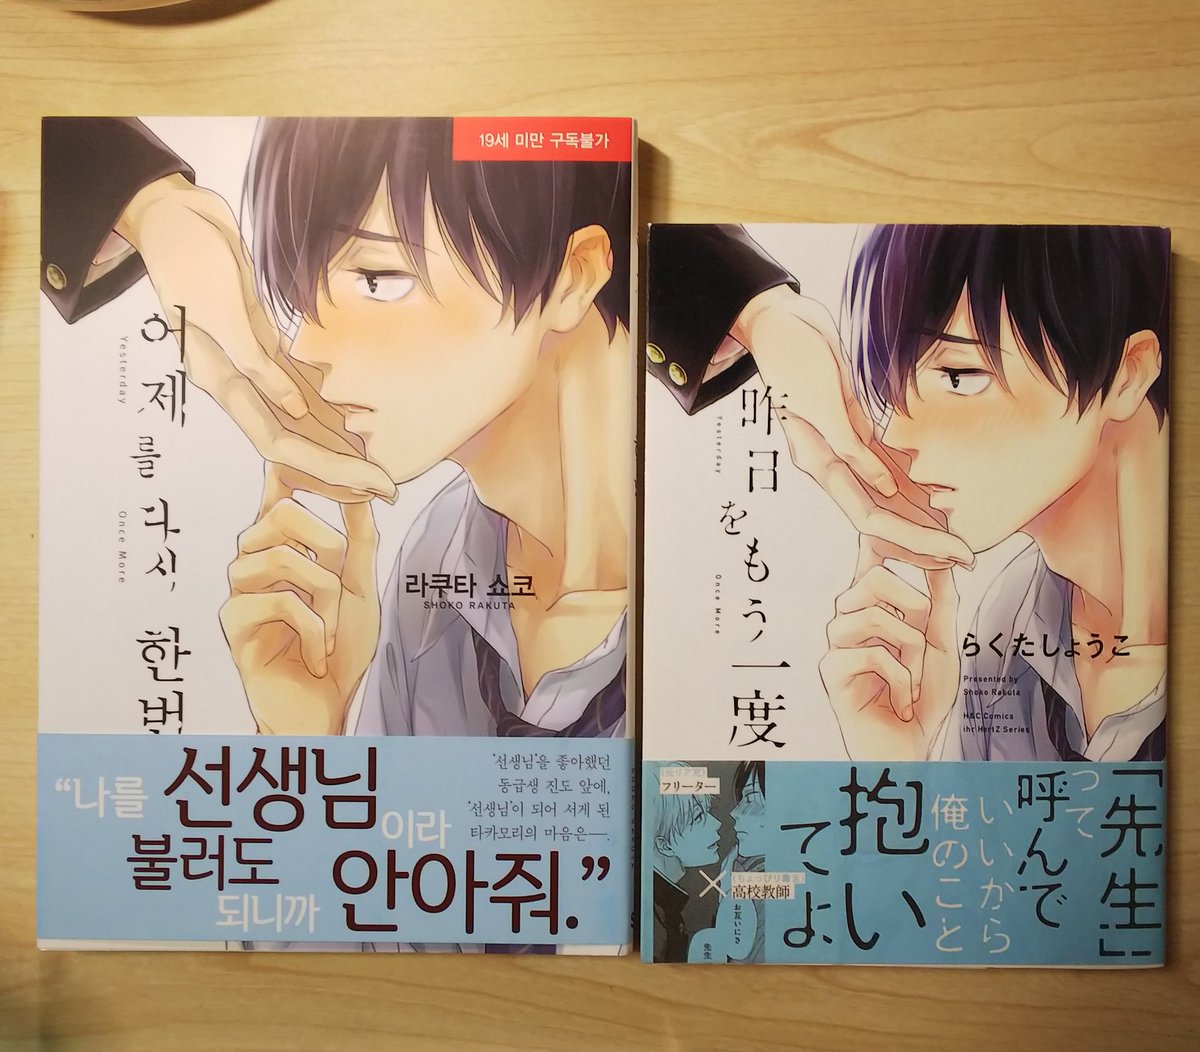 そういえば呟くの遅くなっちゃったんですが、大洋図書さんから『昨日をもう一度』の韓国語版をいただきました。
A5なのでなんか新鮮…!楽しんでもらえたら嬉しいです? 